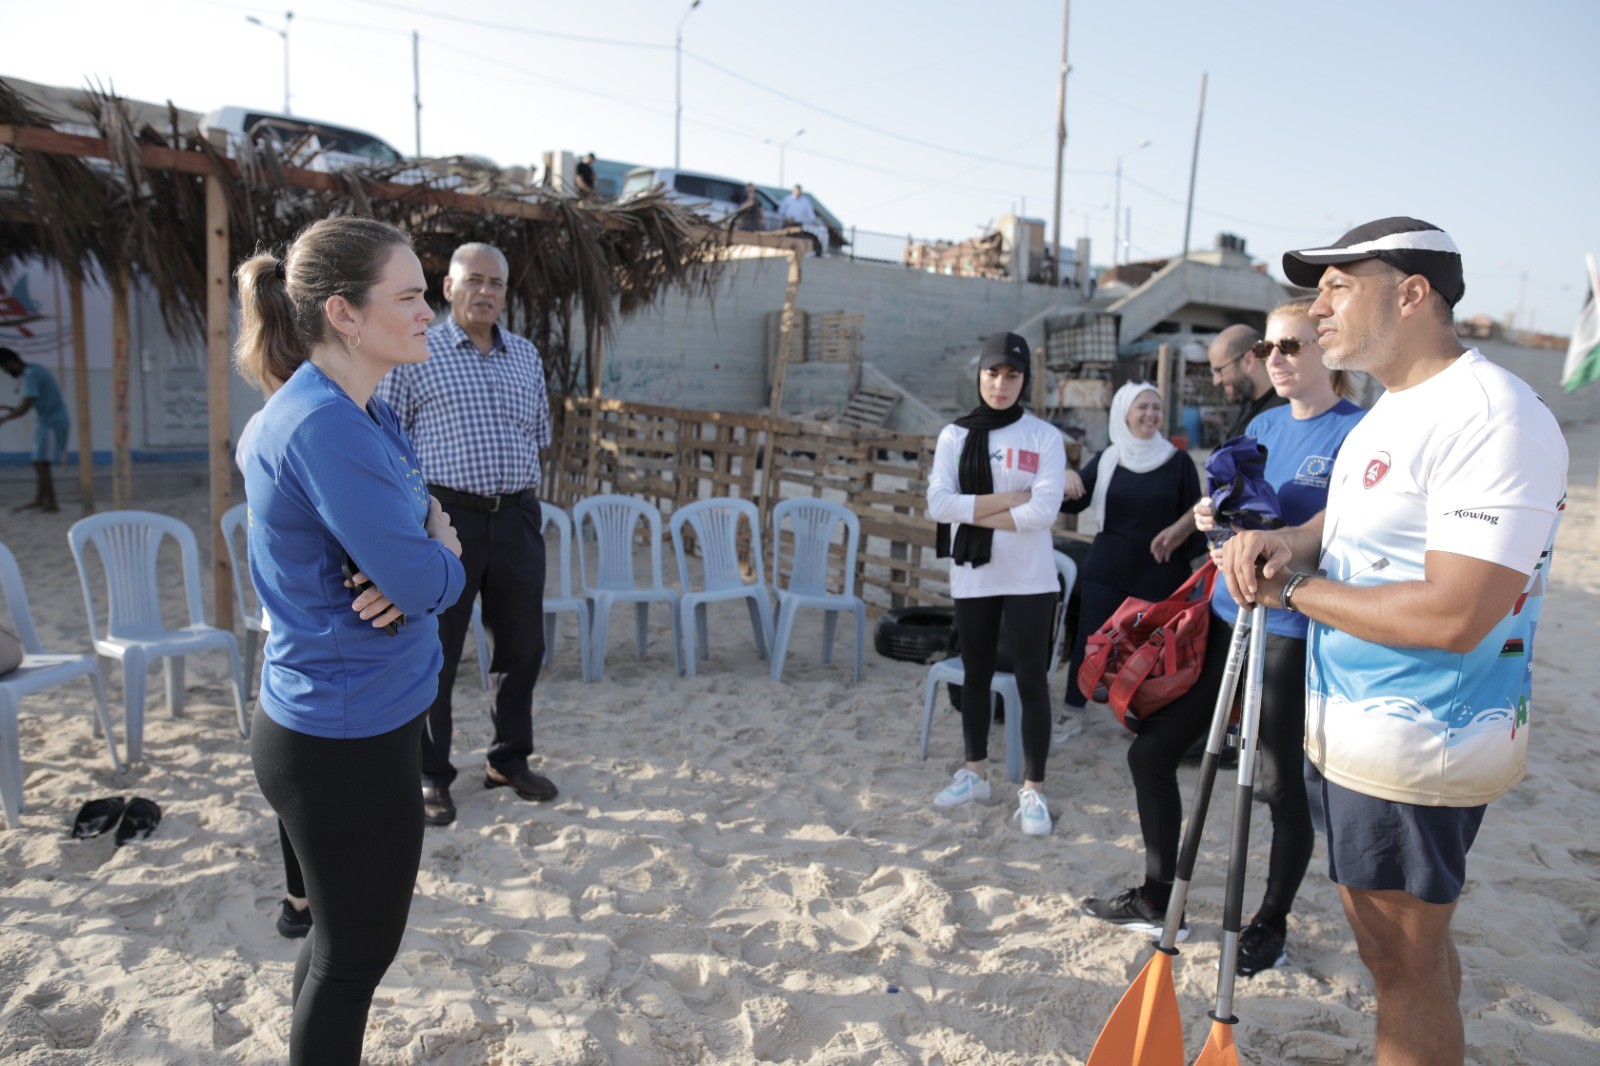 وفد من الاتحاد الأوروبي يمارس رياضة التجديف على شاطئ بحر غزة بدعوة من اتحاد الشراع والتجديف 9.jpg